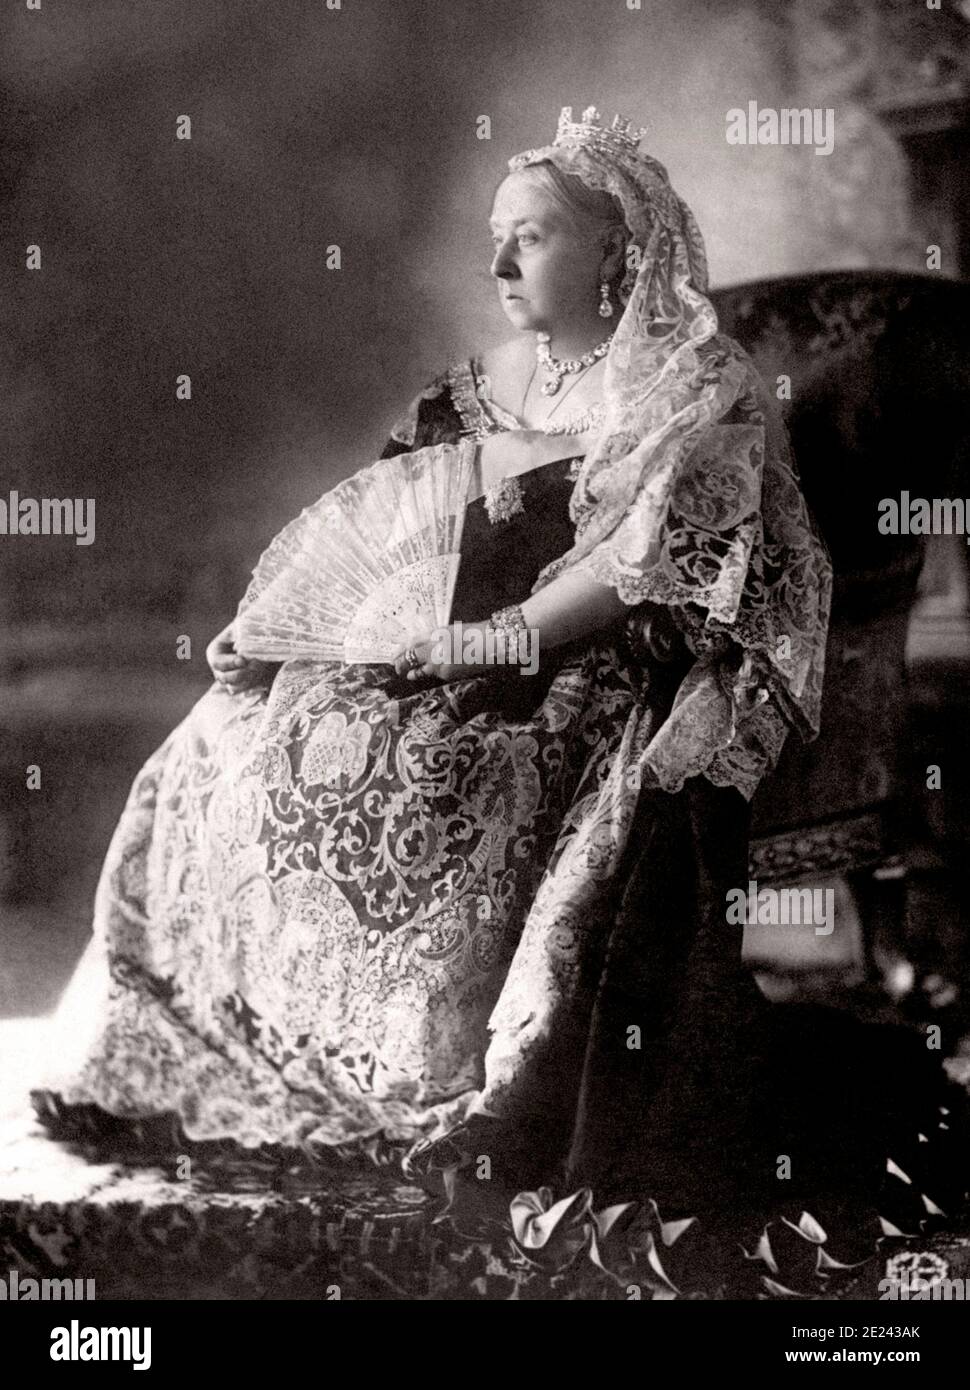 Le Jubilé de diamant de la reine Victoria portrait photographique. Victoria (1819 - 1901) fut reine du Royaume-Uni de Grande-Bretagne et d'Irlande de 20 ju Banque D'Images